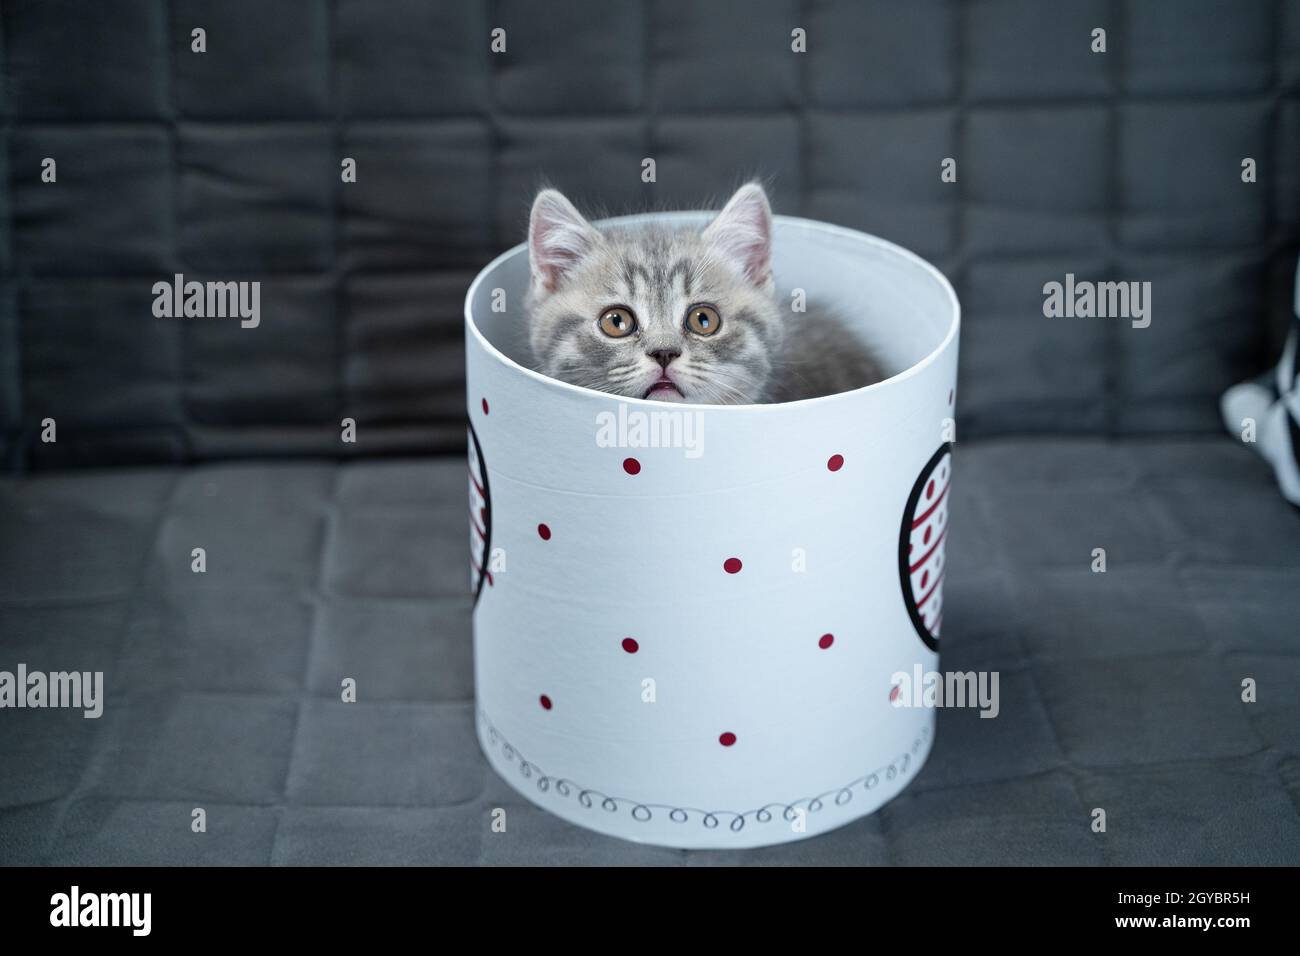 Gato bebé en una caja de regalo fotografías e imágenes de alta resolución -  Página 4 - Alamy